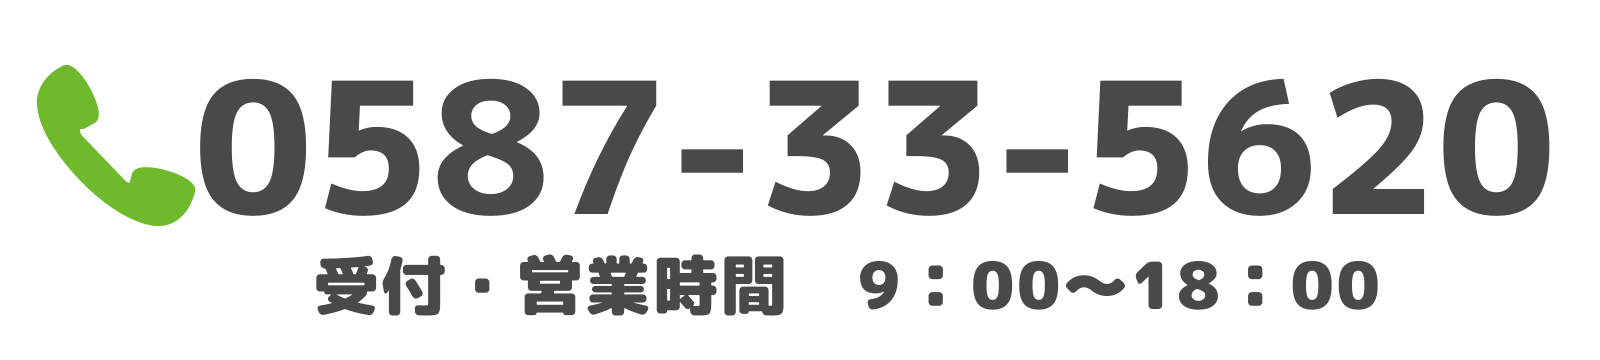 稲沢あんしん不動産の代表電話番号